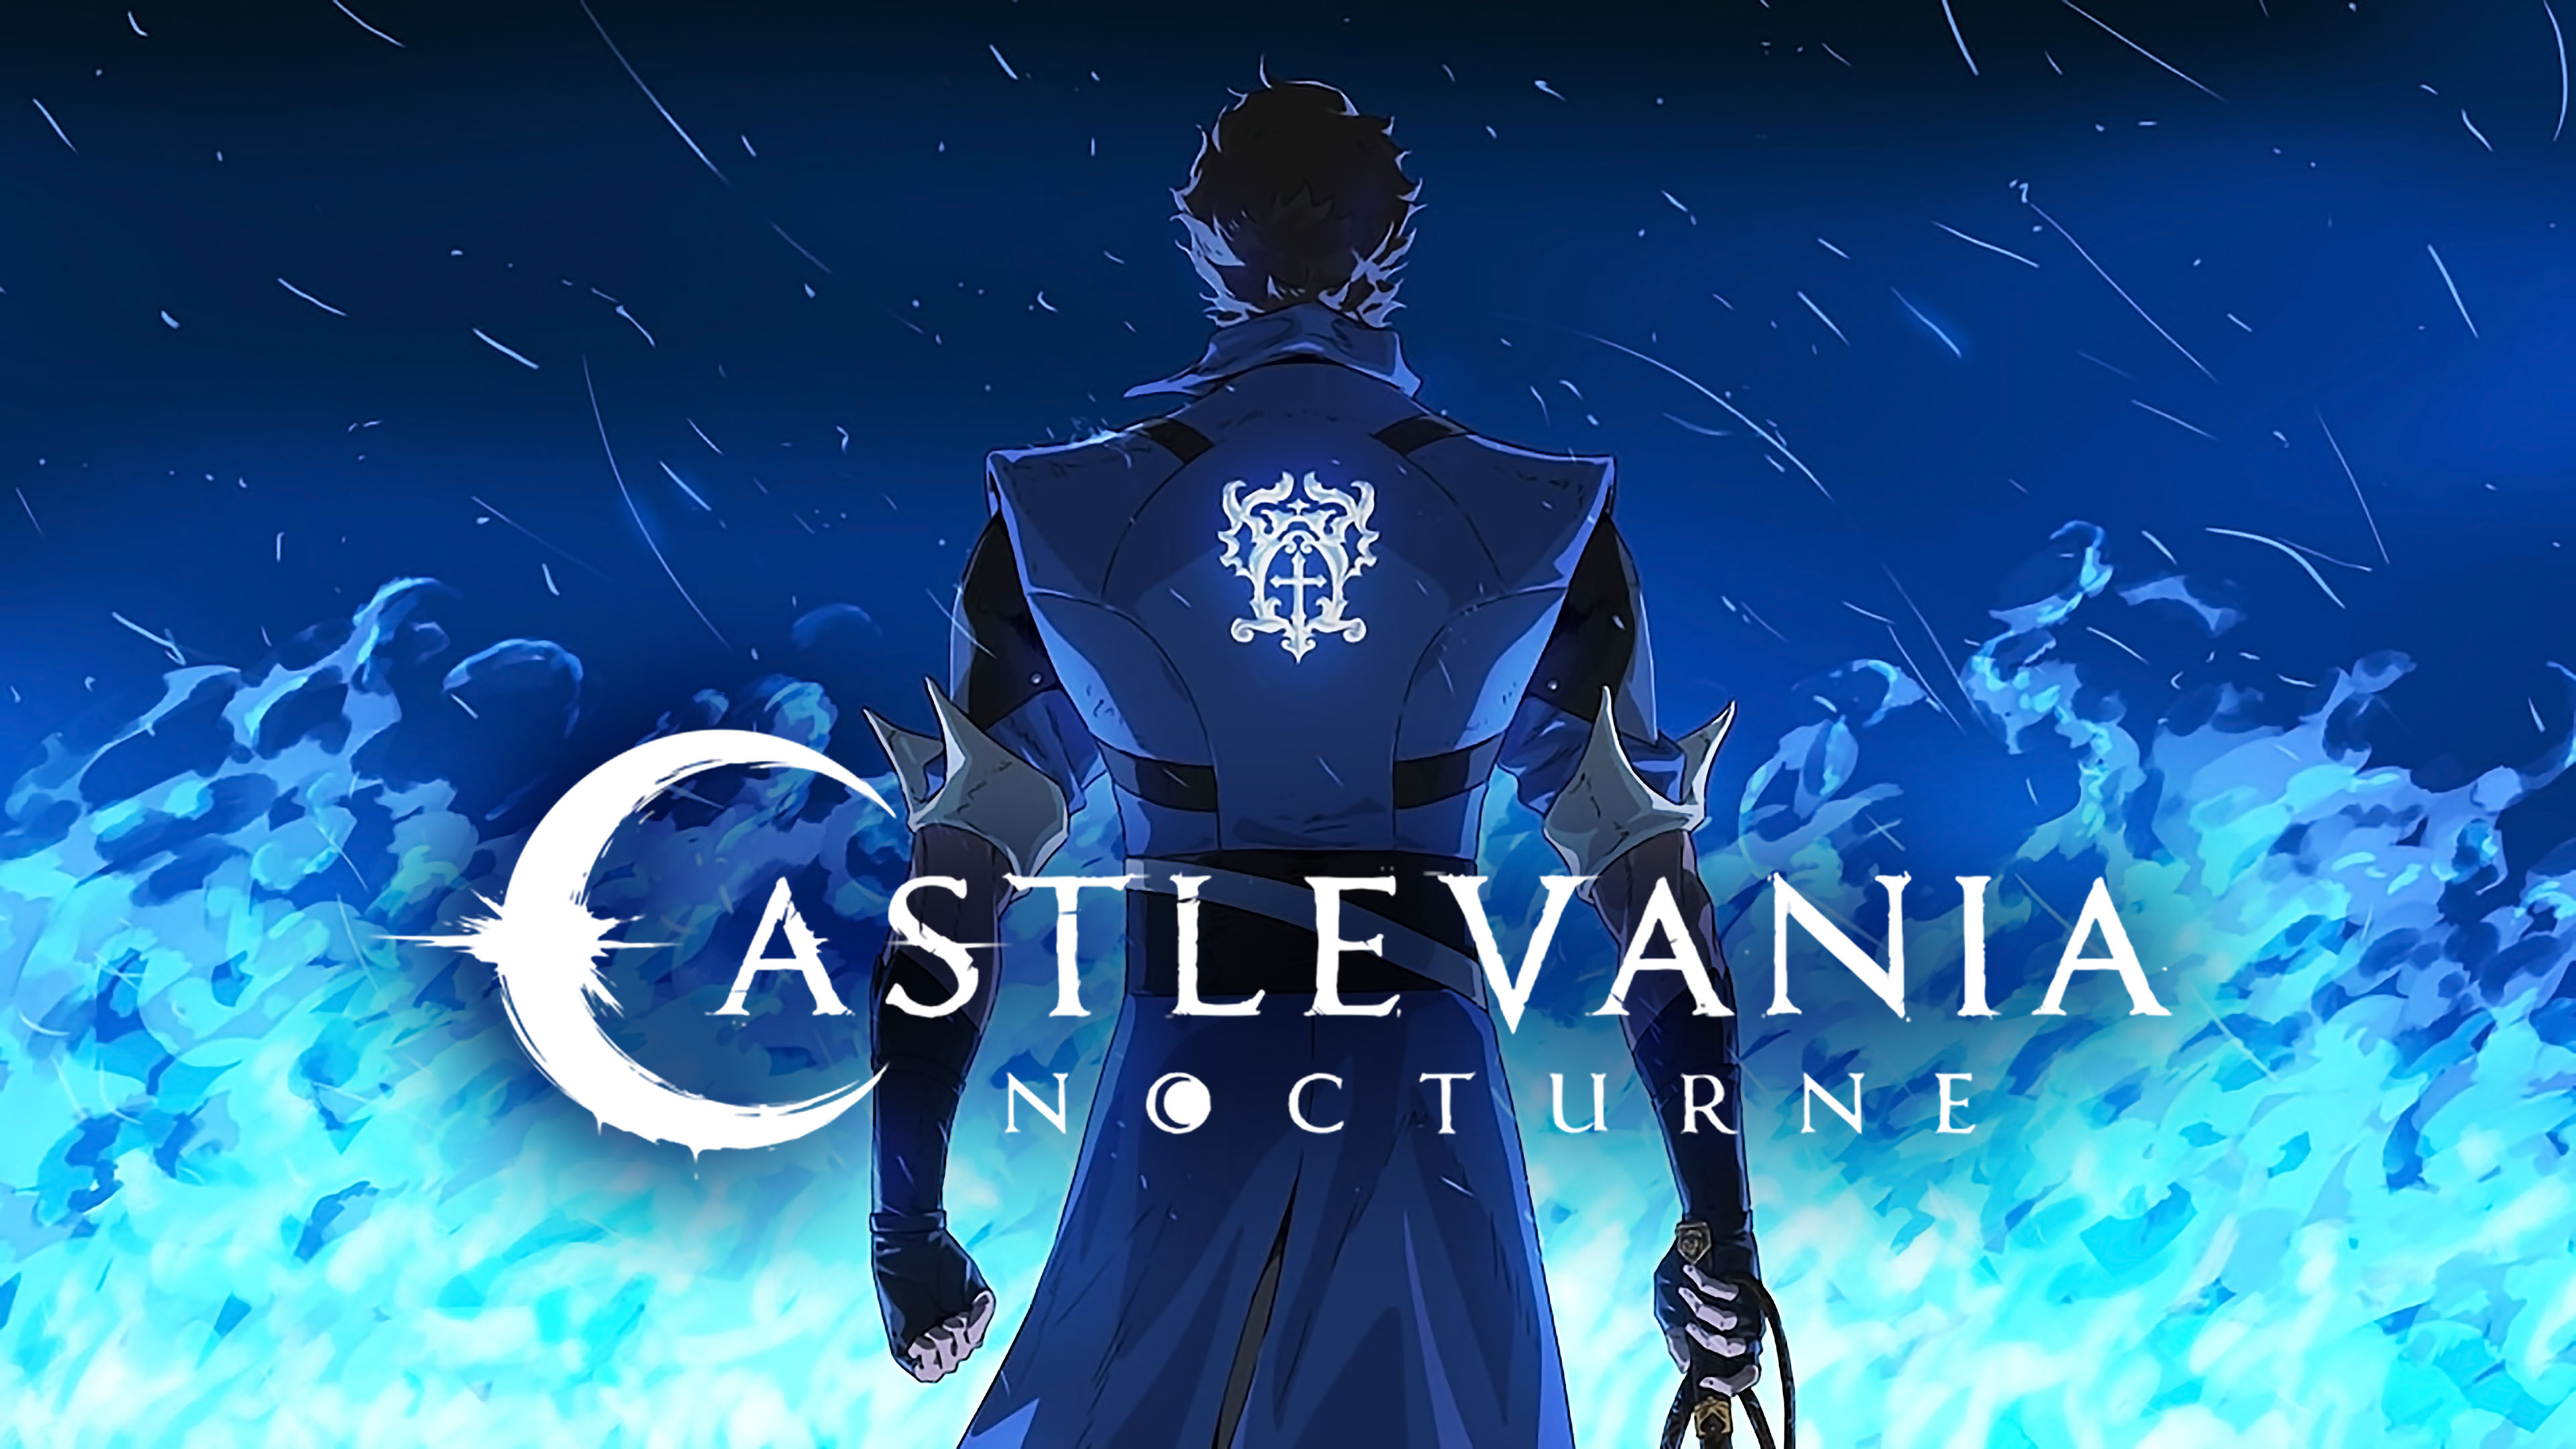 Die zweite Staffel von Castlevania: Nocturne ist bereits in Entwicklung